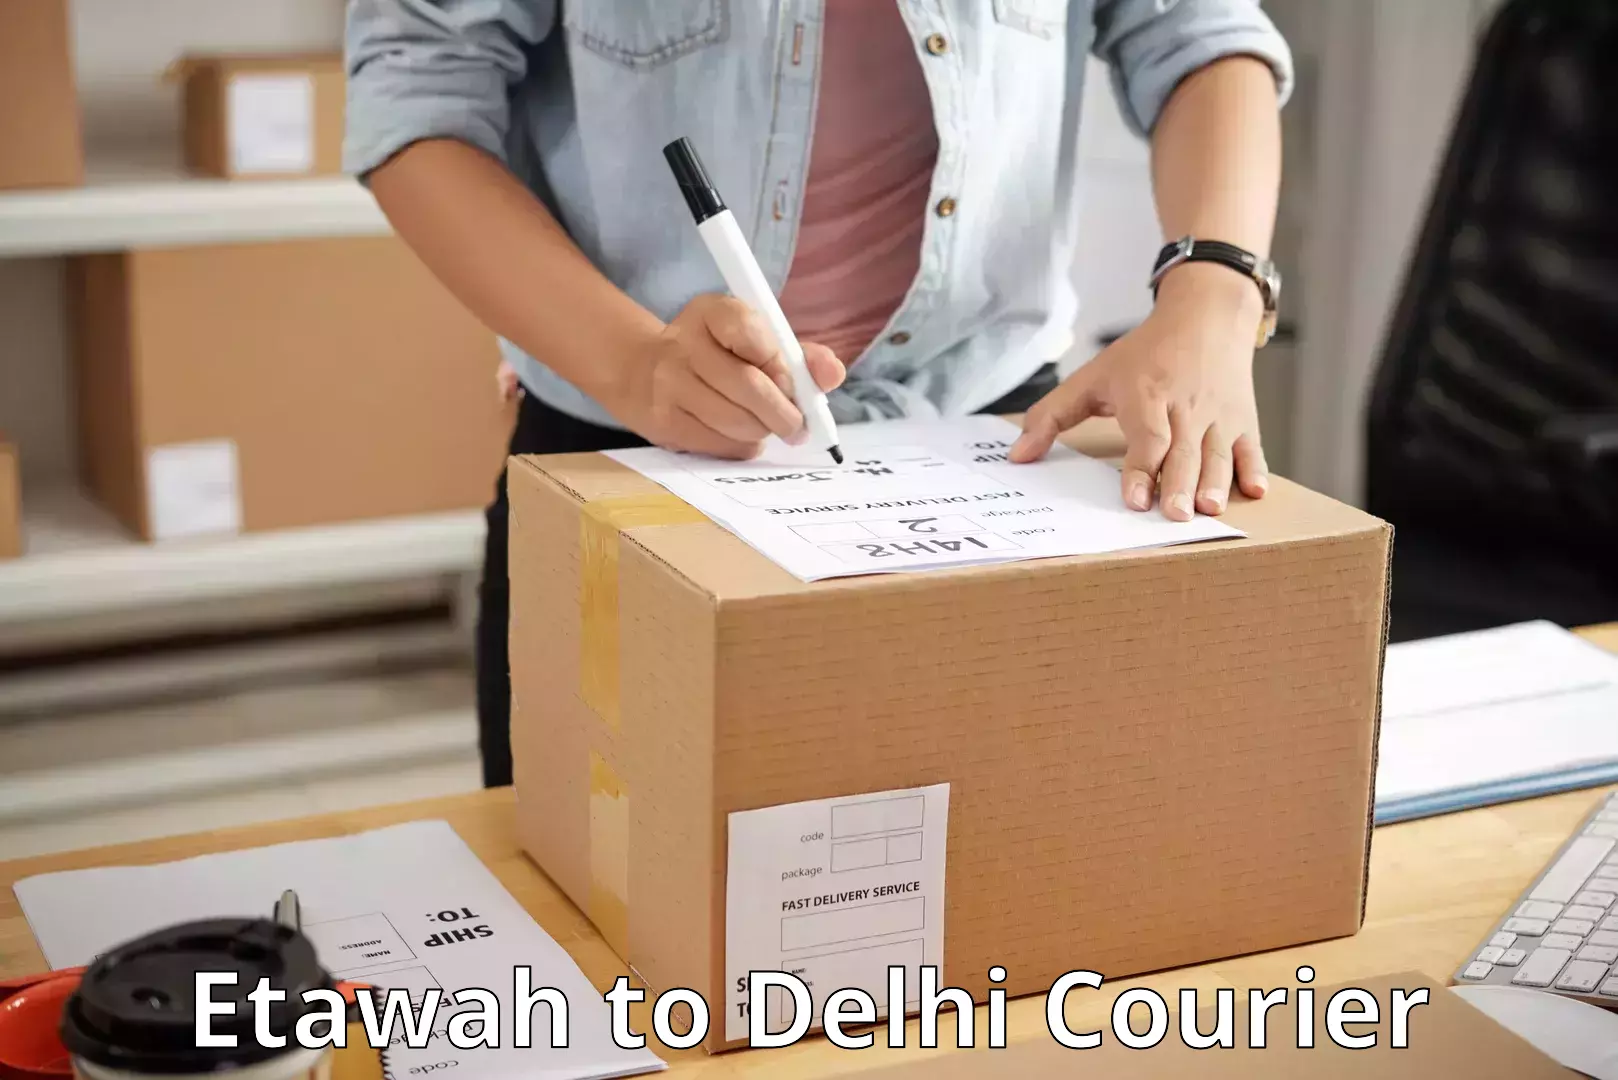 Global logistics network Etawah to Delhi